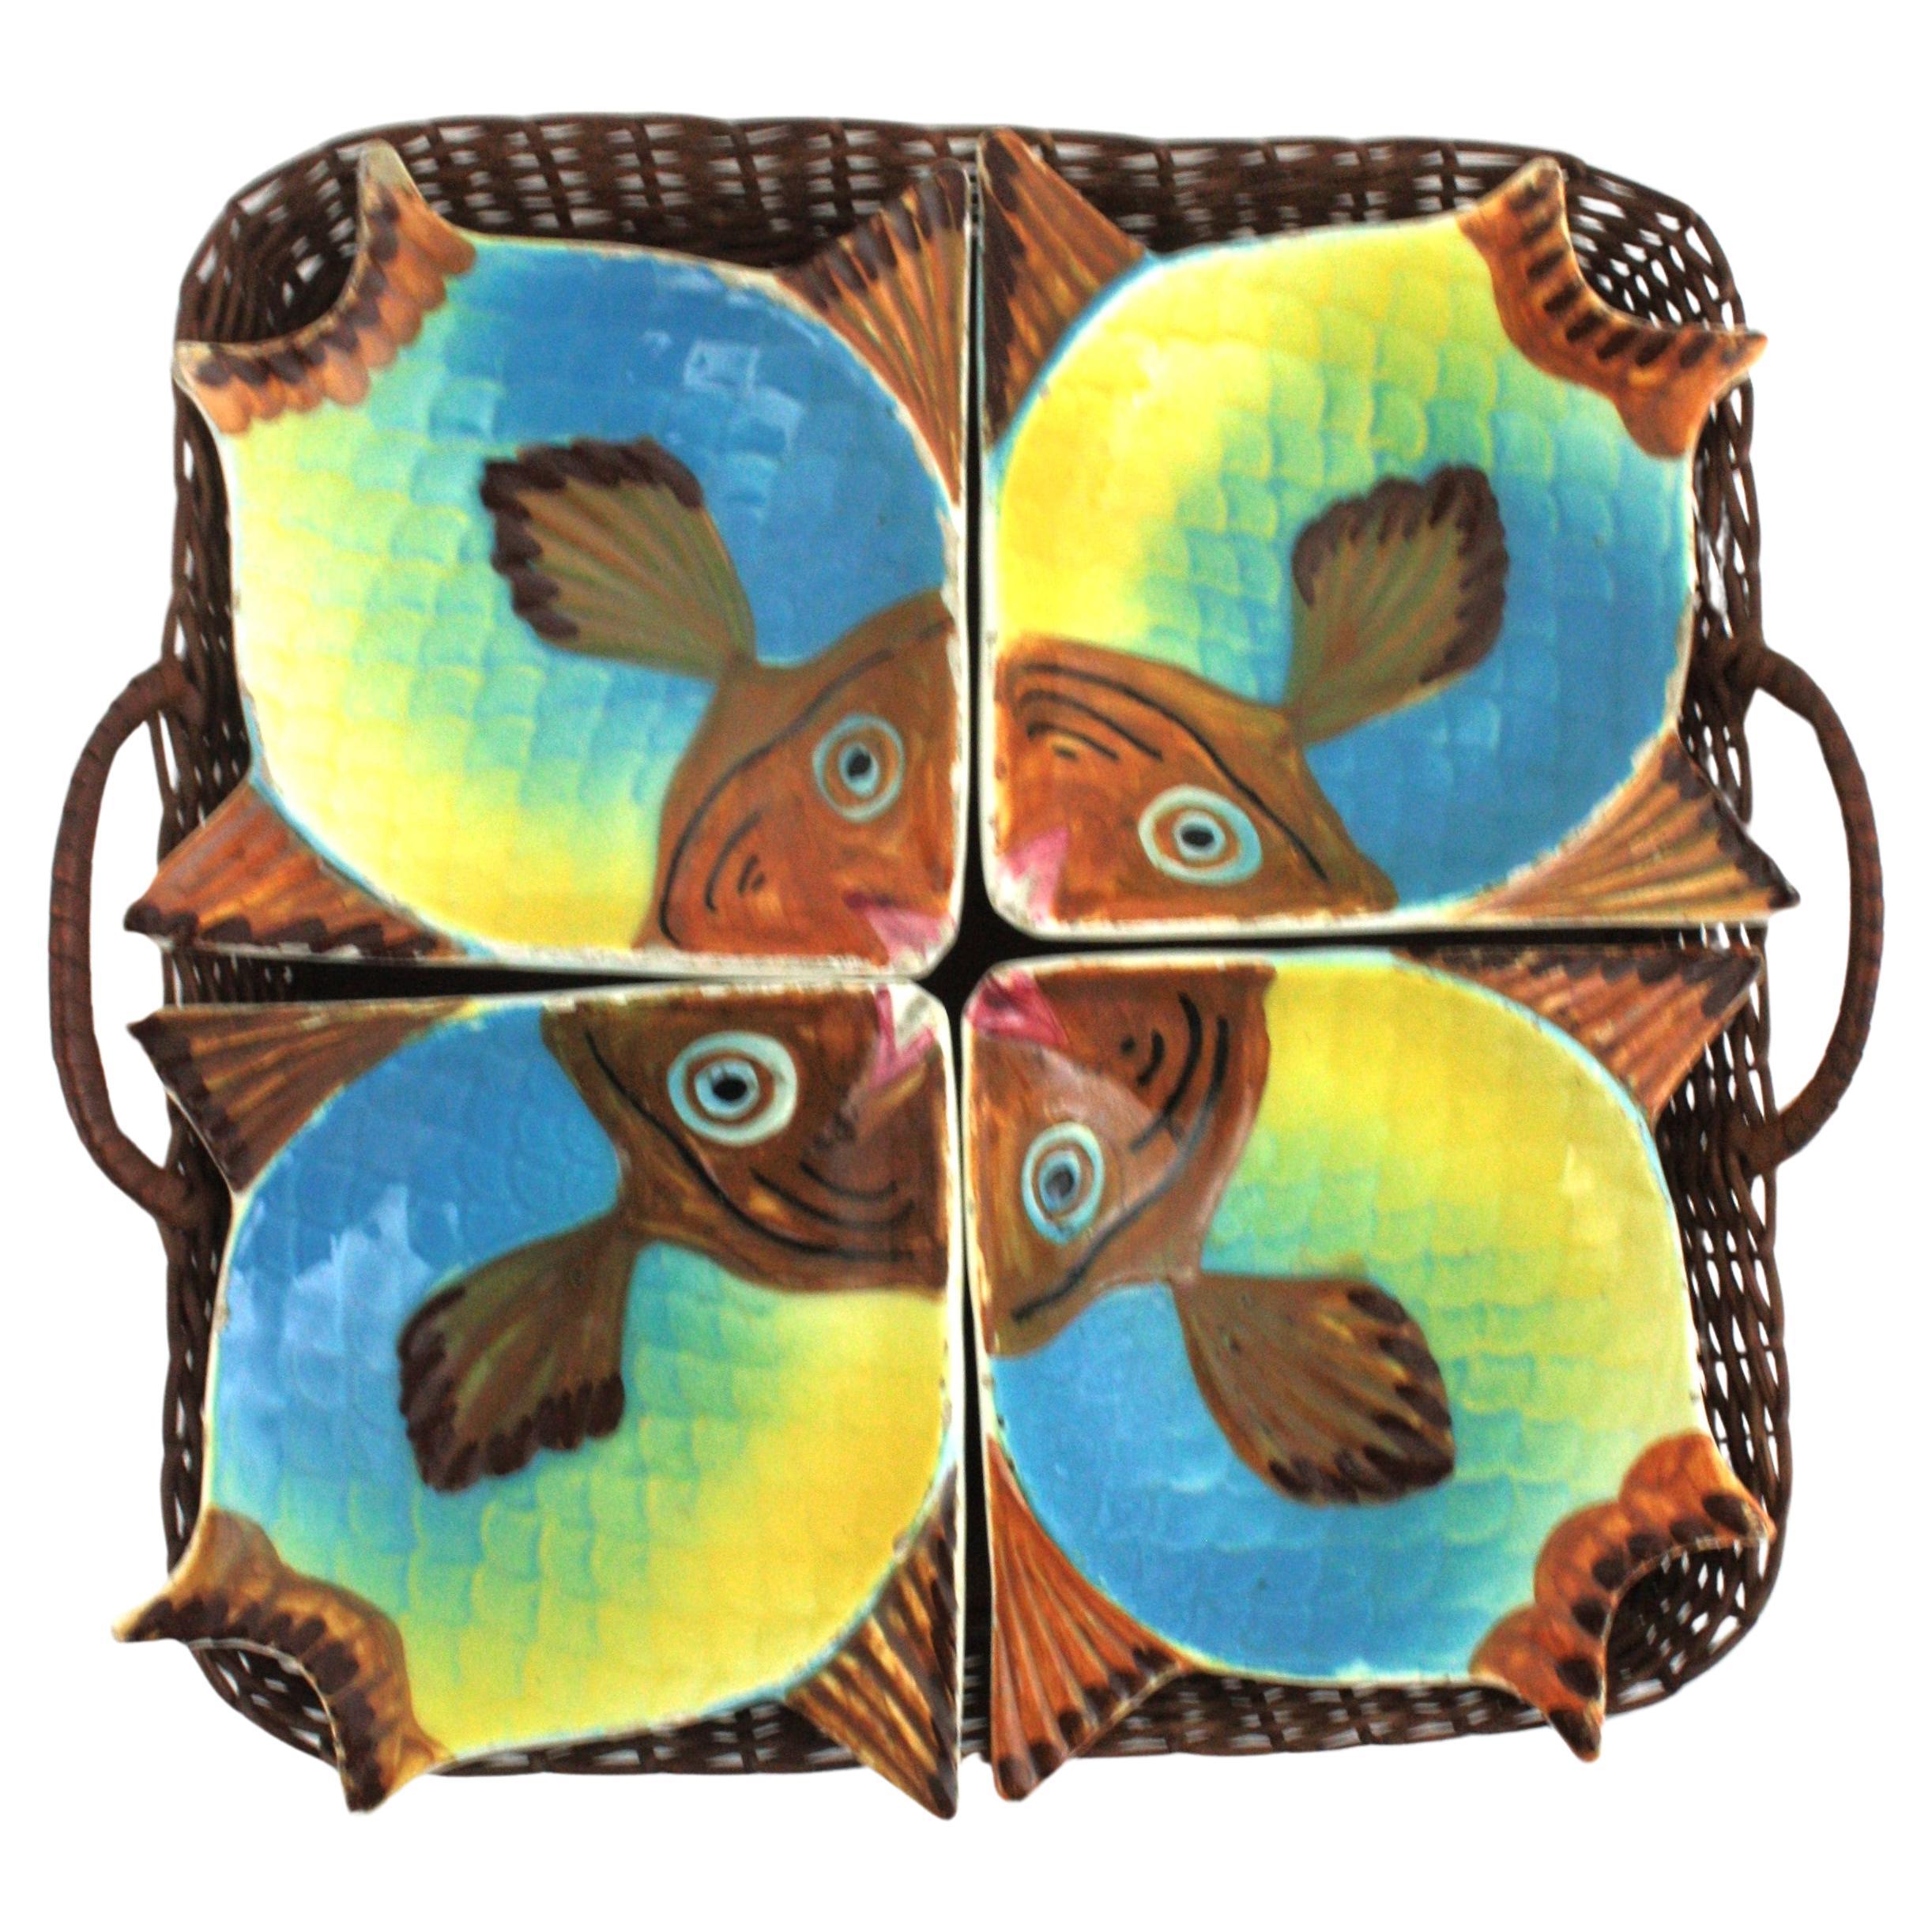 Ensemble de 4 petits bols en forme de poisson sur un plateau de service en rotin, Espagne, années 1950
L'ensemble est composé de : 
4 plats à poisson colorés en céramique peints à la main
1 plateau en rotin tressé à la main
Marques du fabricant en